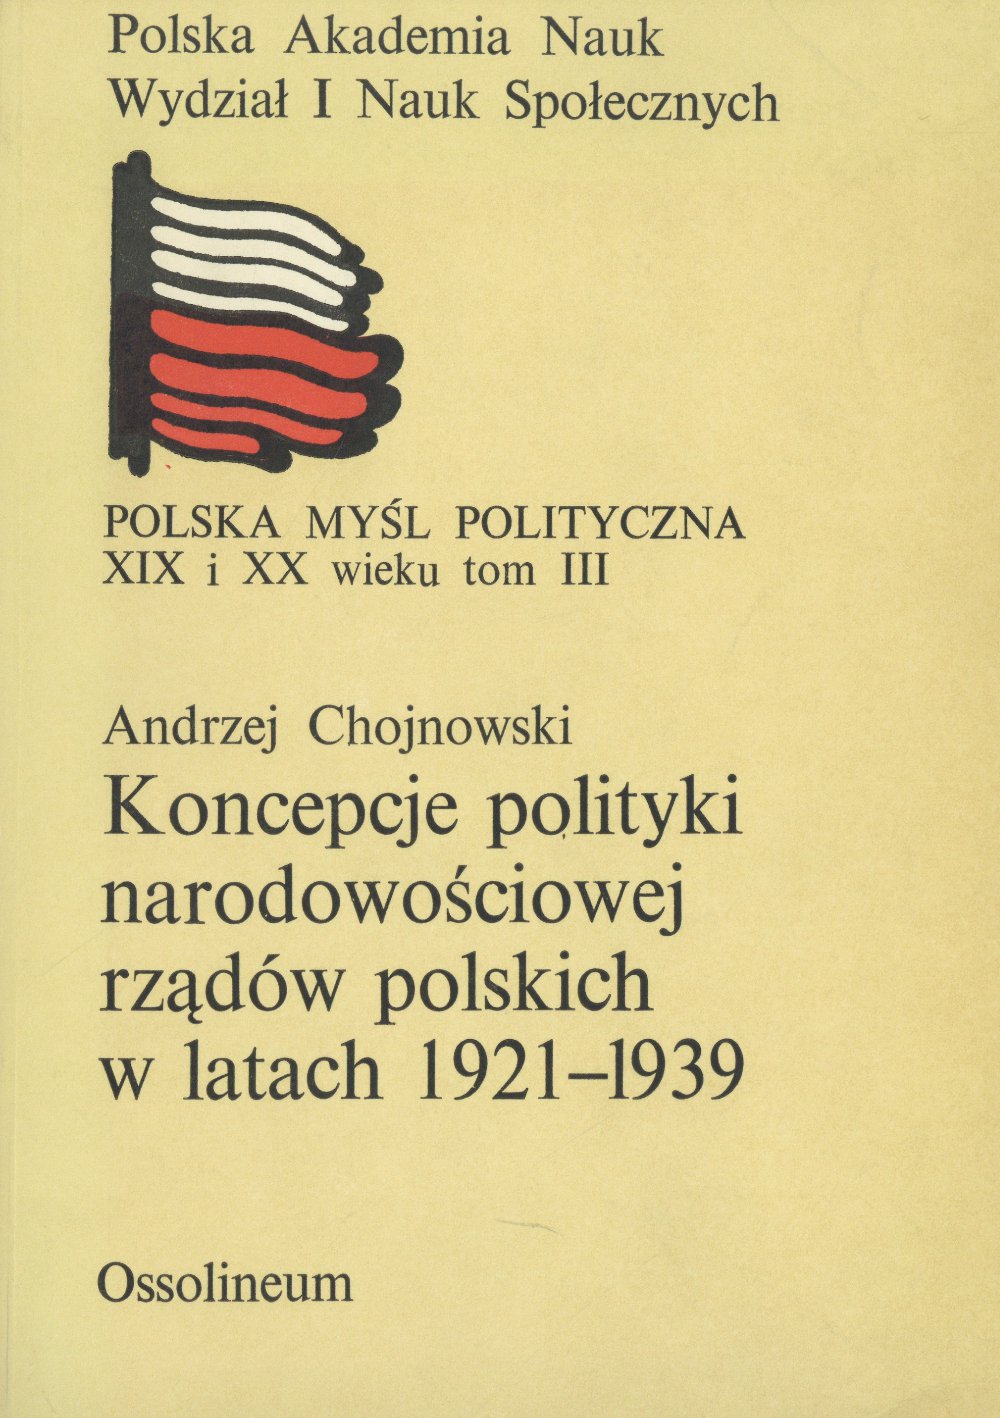 Koncepcje narodowościowe rządów polskich w latach 1921-1939